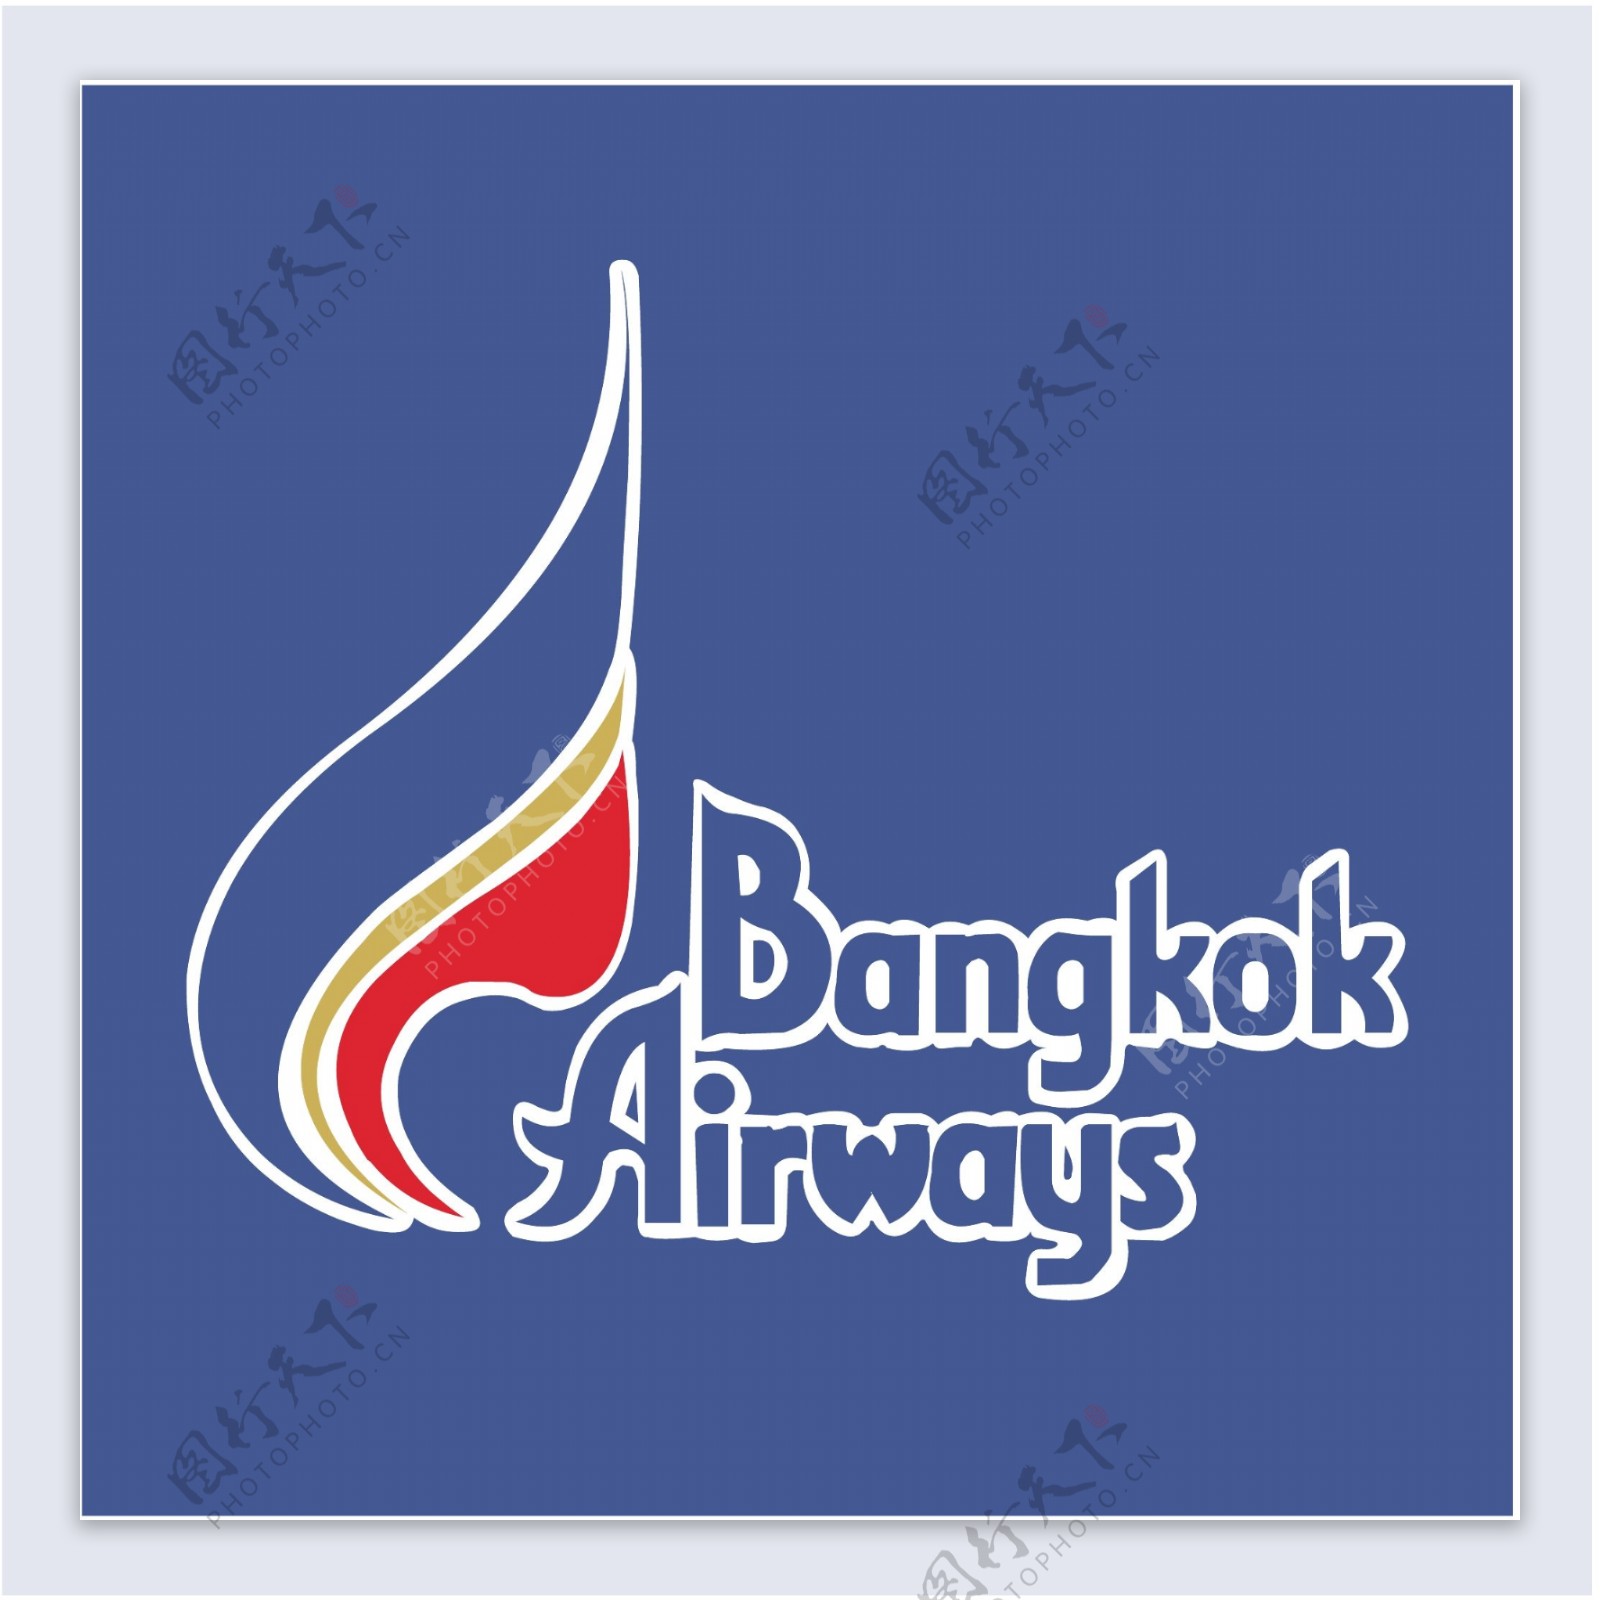 曼谷航空公司